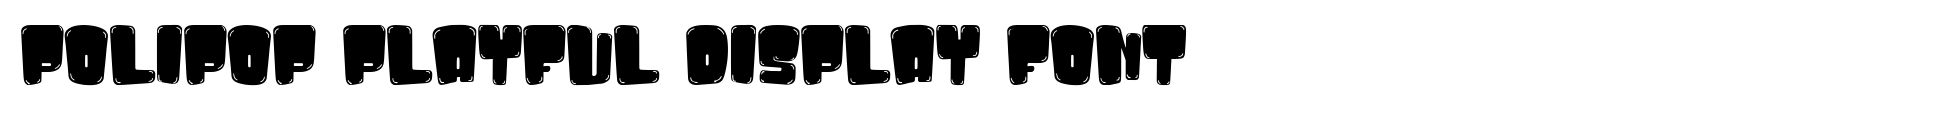 Polipop Playful Display Font